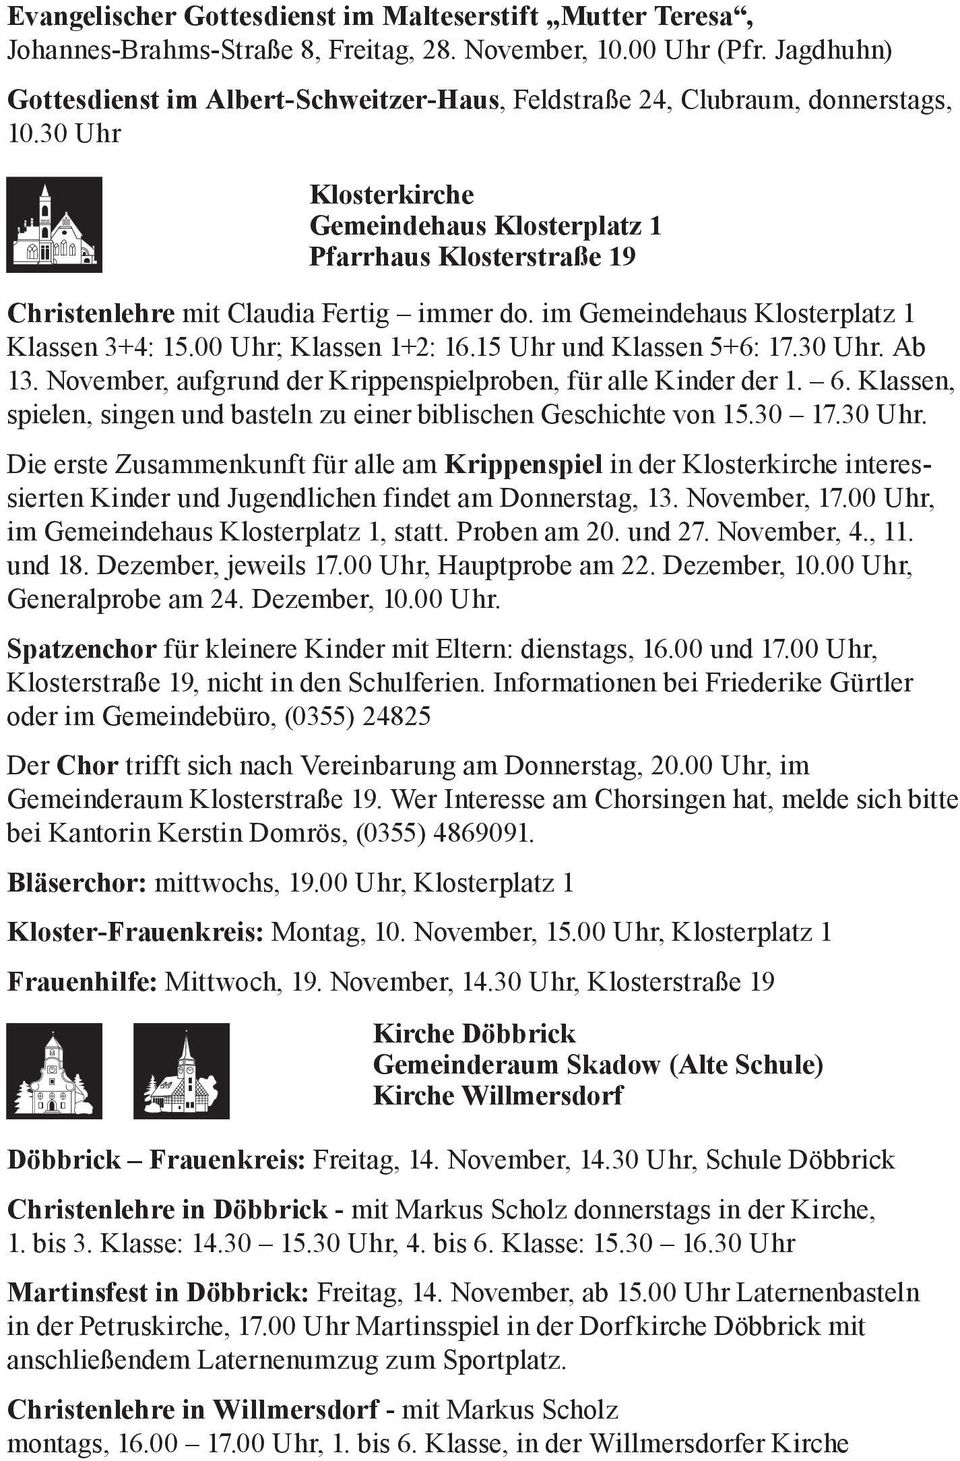 30 Uhr Klosterkirche Gemeindehaus Klosterplatz 1 Pfarrhaus Klosterstraße 19 Christenlehre mit Claudia Fertig immer do. im Gemeindehaus Klosterplatz 1 Klassen 3+4: 15.00 Uhr; Klassen 1+2: 16.